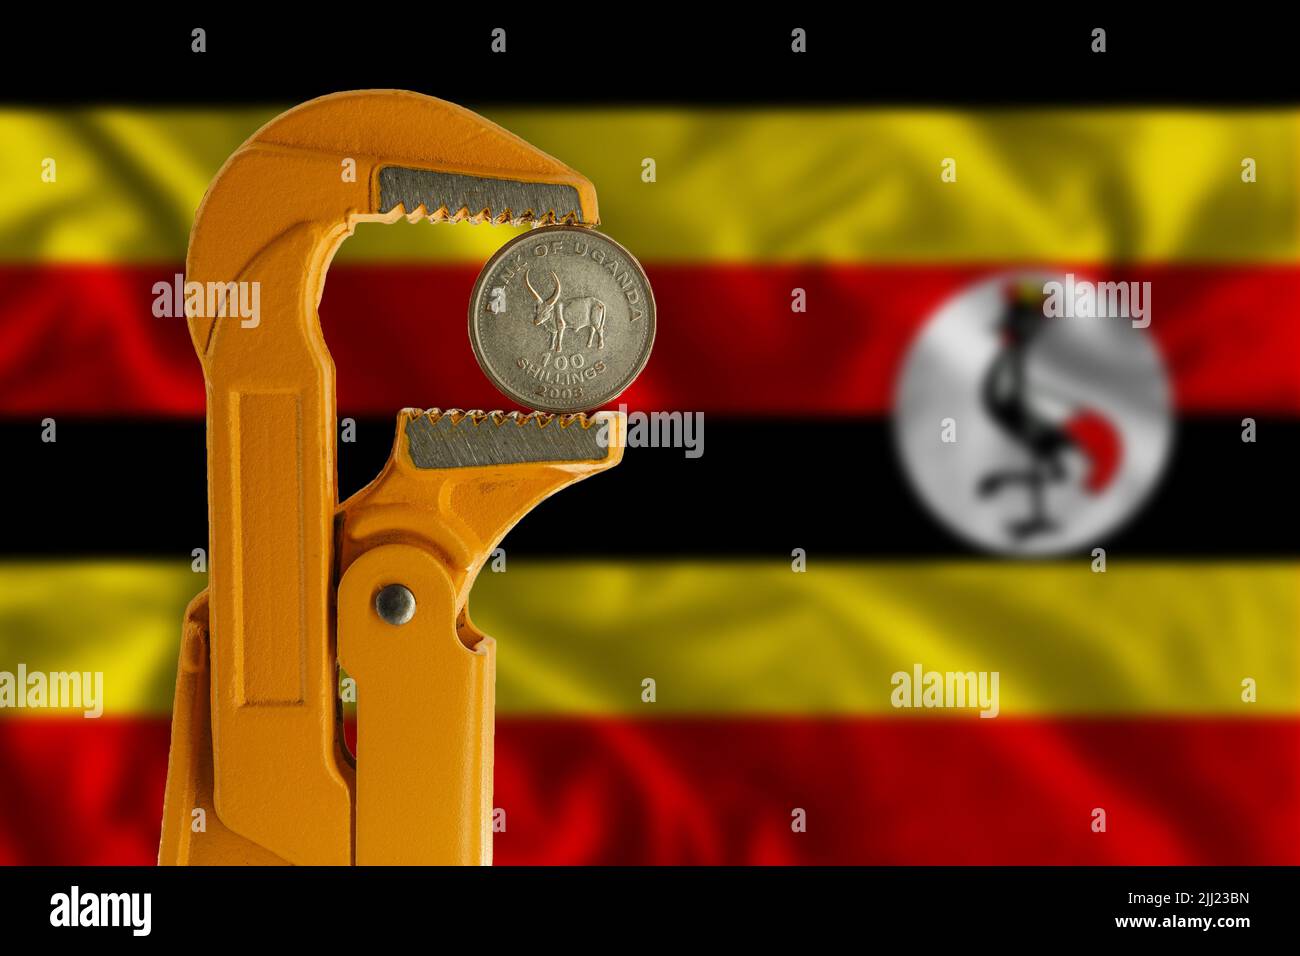 Cento scellini di moneta ugandese tenuti in una chiave per idraulico arancione sullo sfondo della bandiera ugandese. Foto Stock